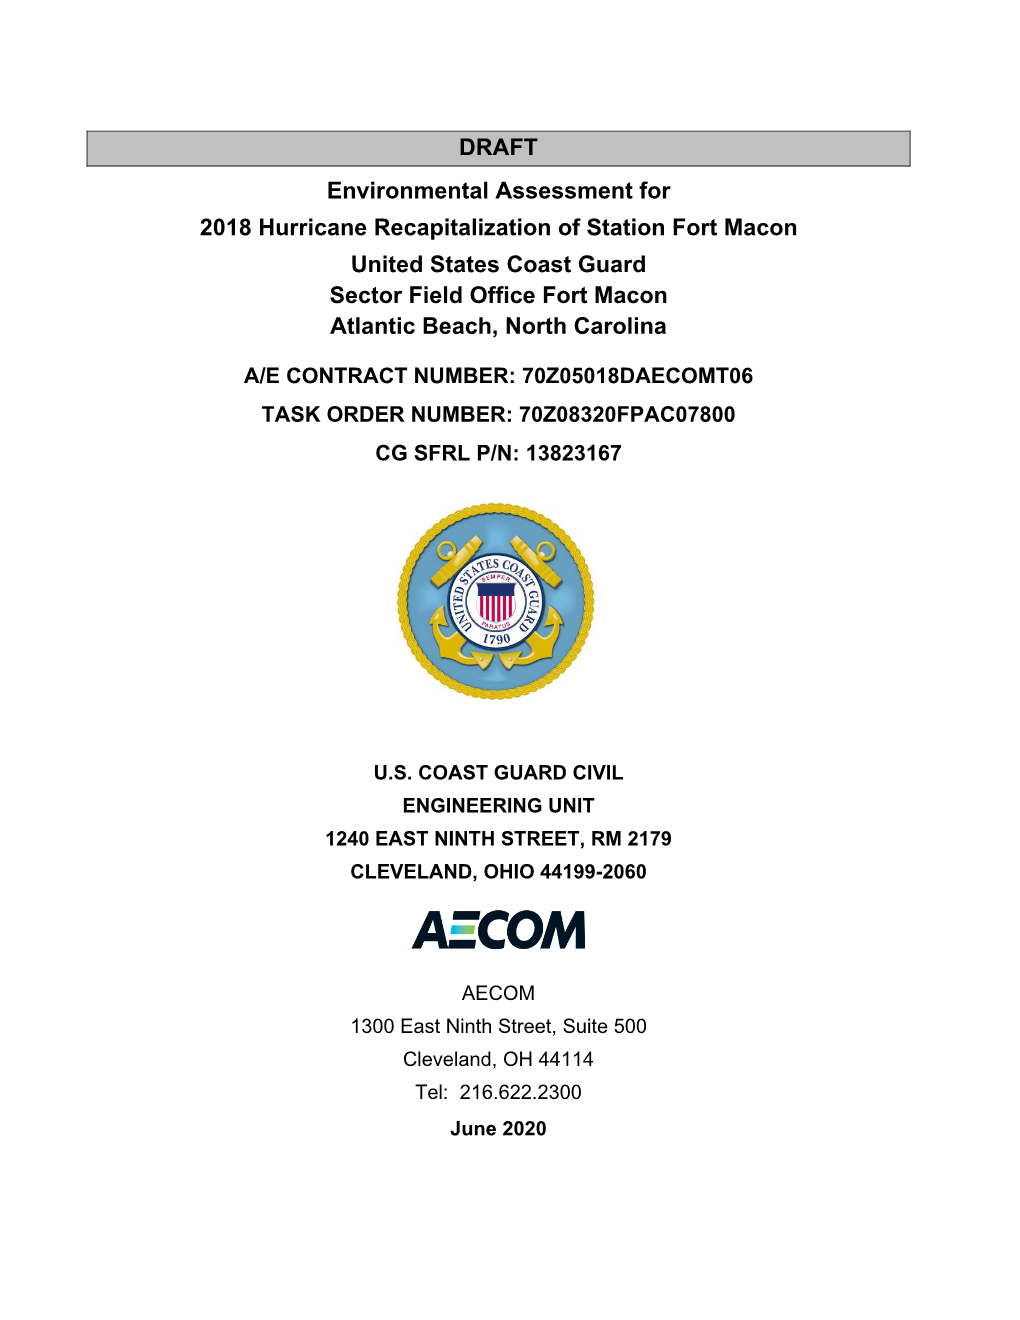 Environmental Assessment for 2018 Hurricane Recapitalization Of